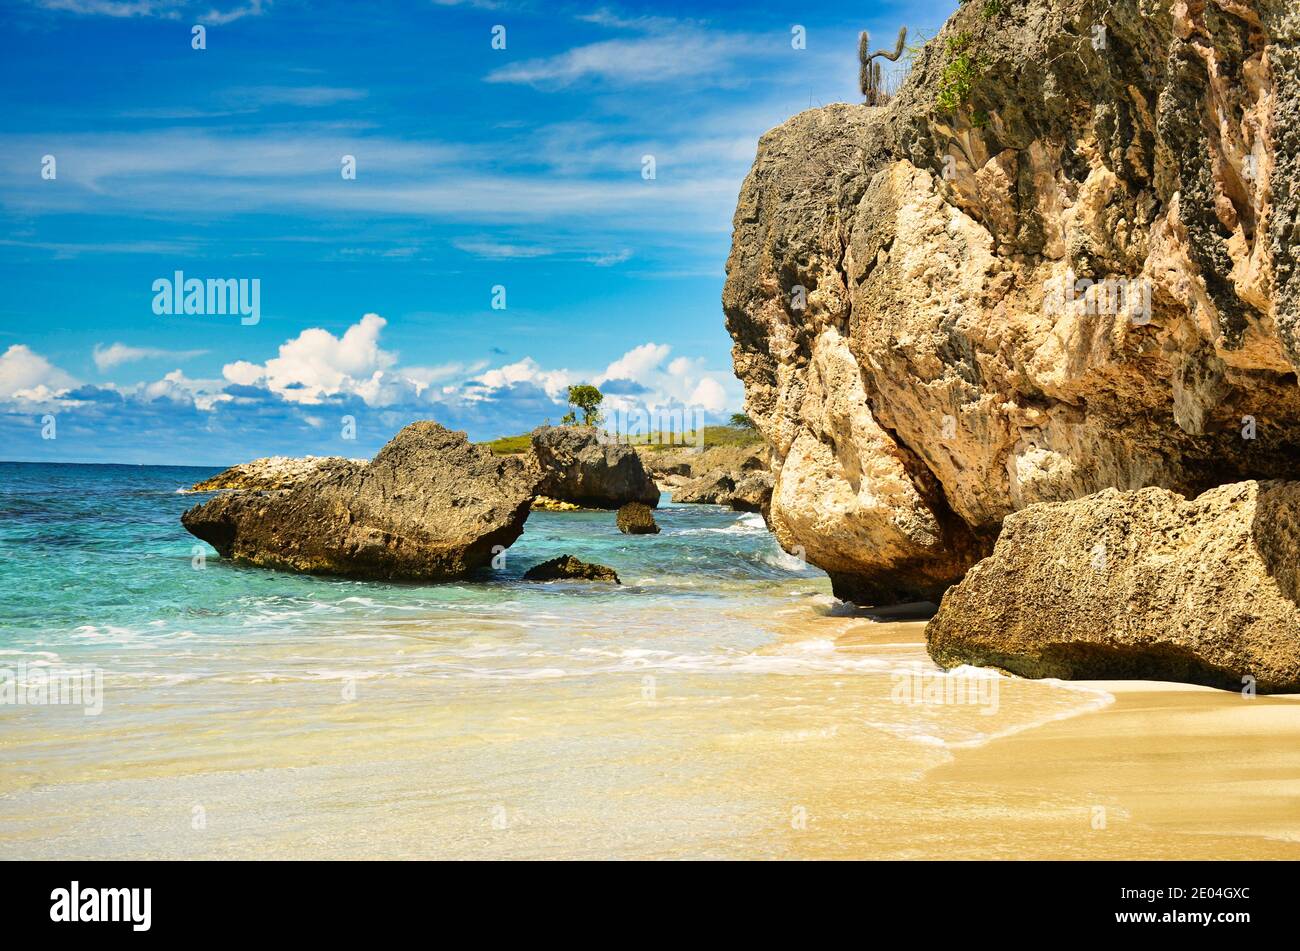 bellissima spiaggia sull'isola caraibica di bonaire, ottimo luogo per fare snorkeling e immersioni sull'isola. godetevi il relax nella sabbia vicino al mare Foto Stock